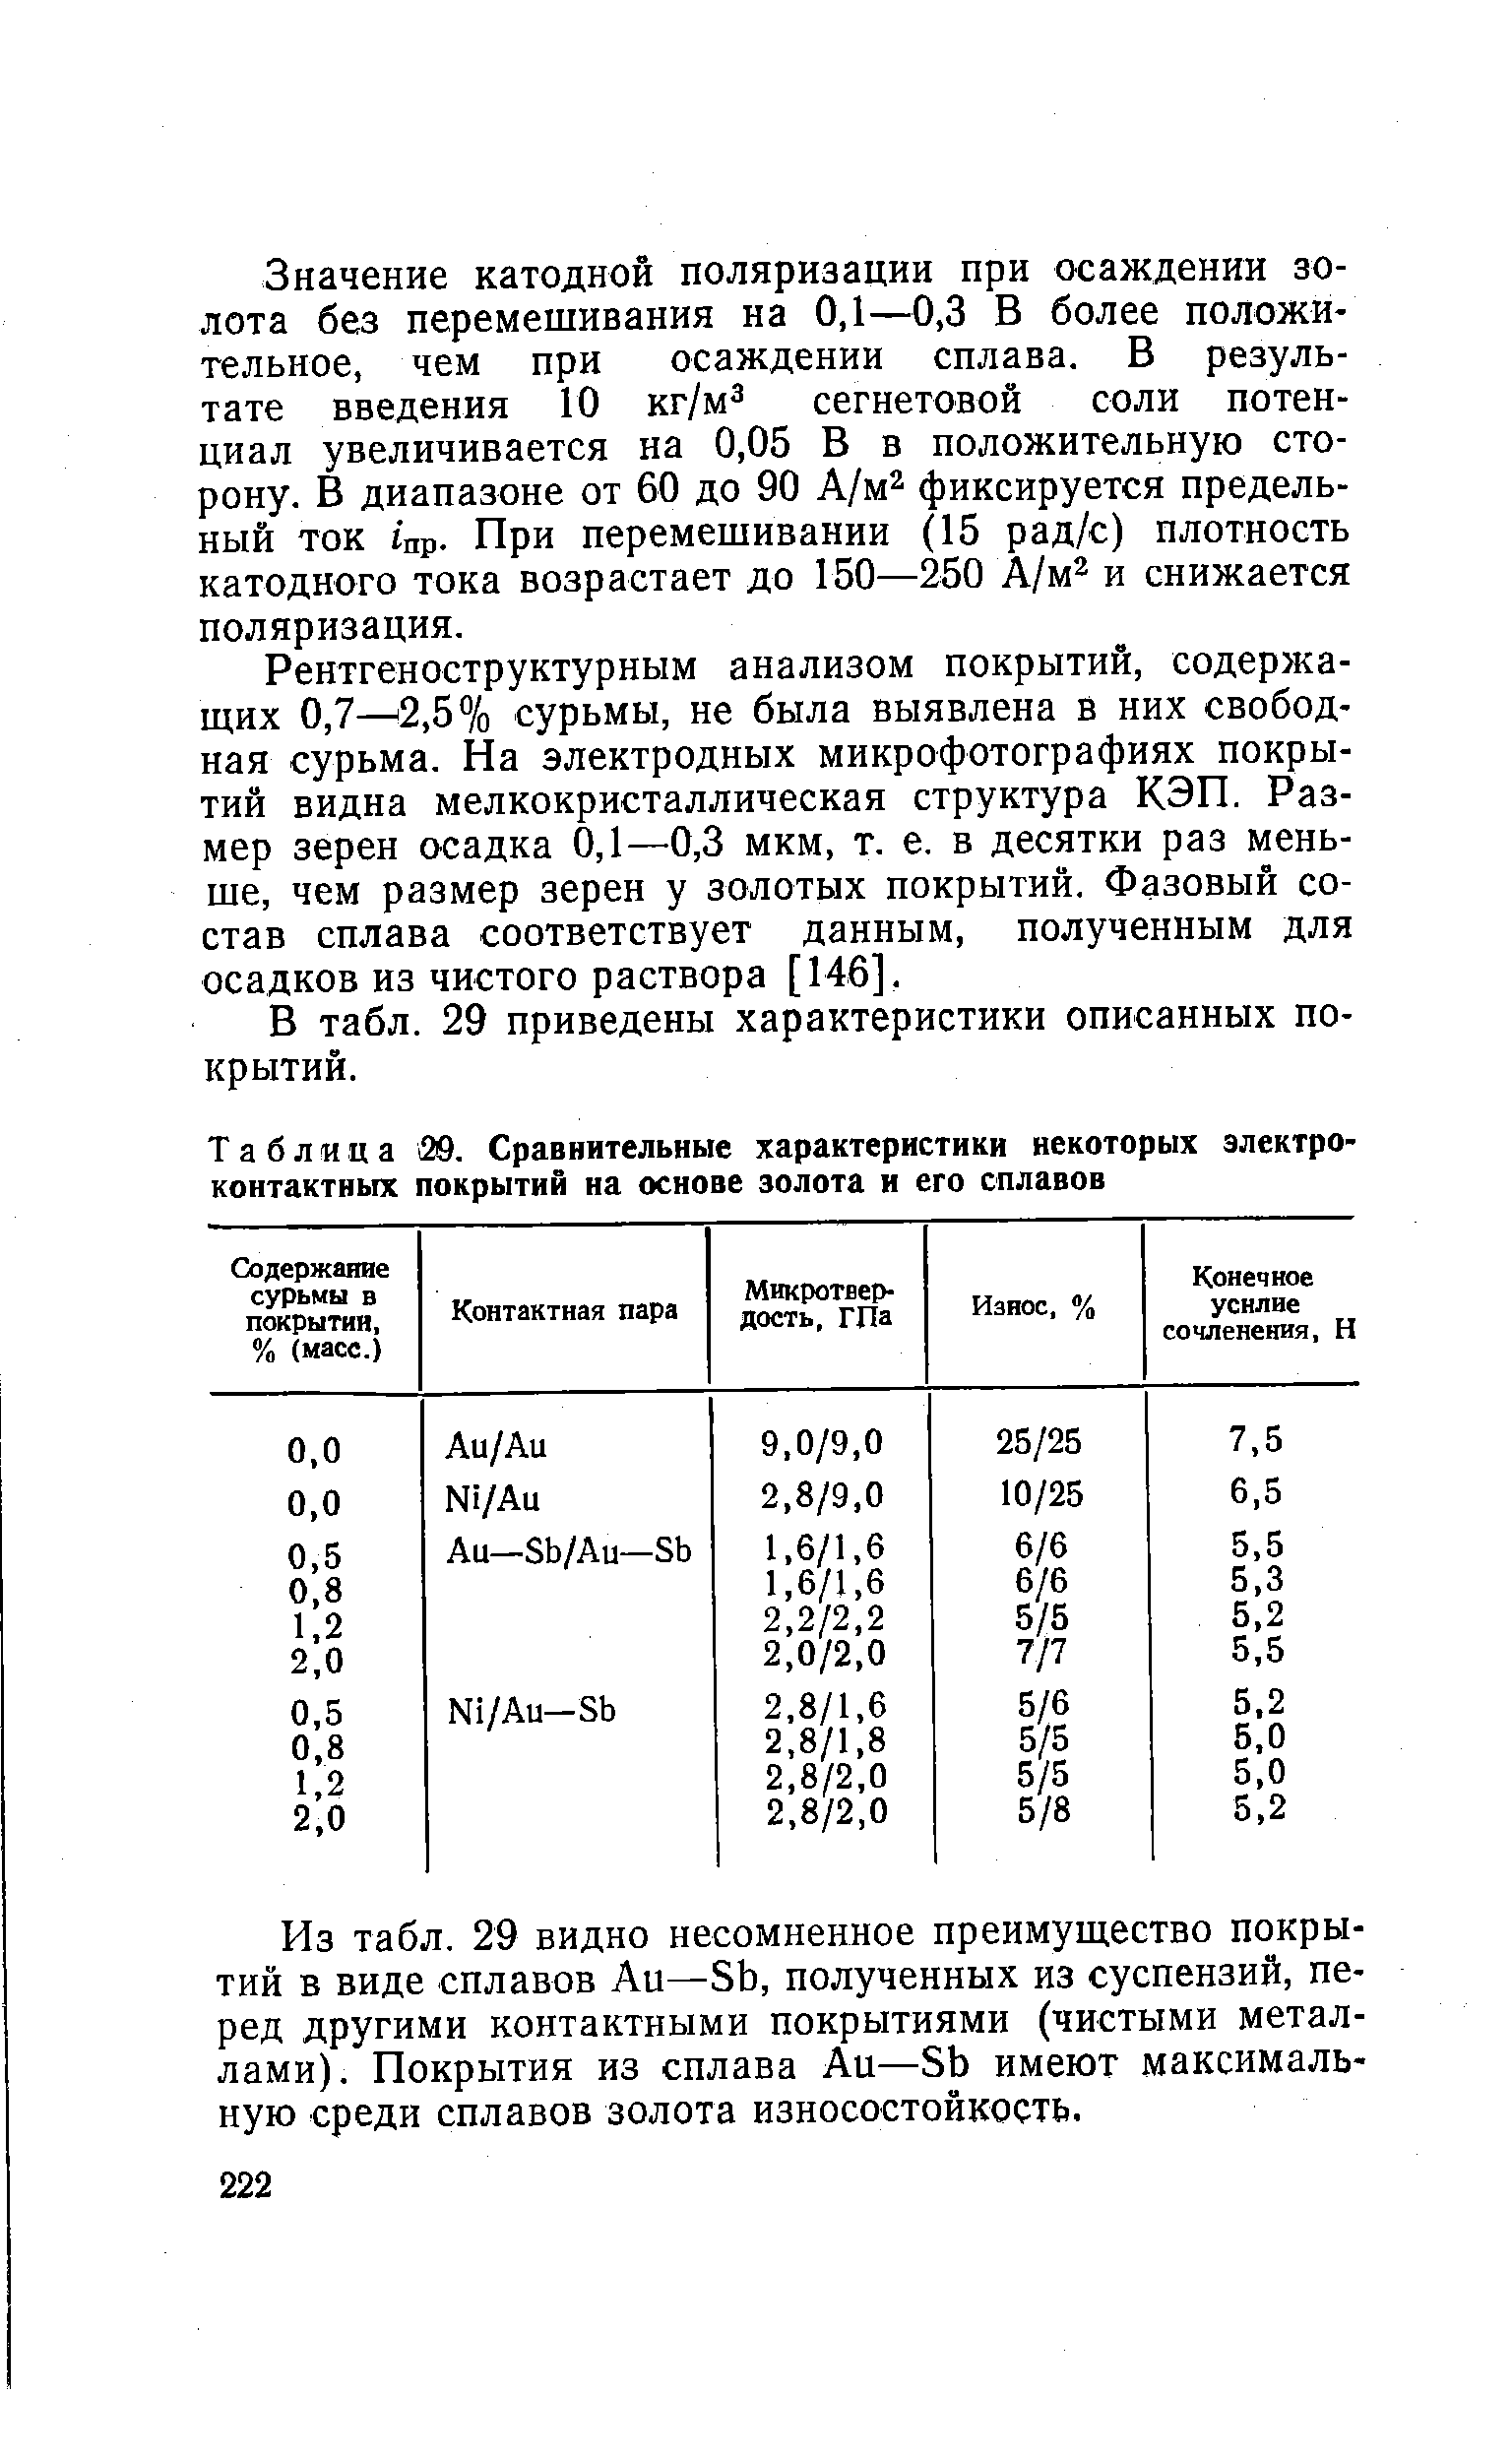 Таблица 39. Сравнительные характеристики некоторых электро-контактных покрытий на основе золота и его сплавов
